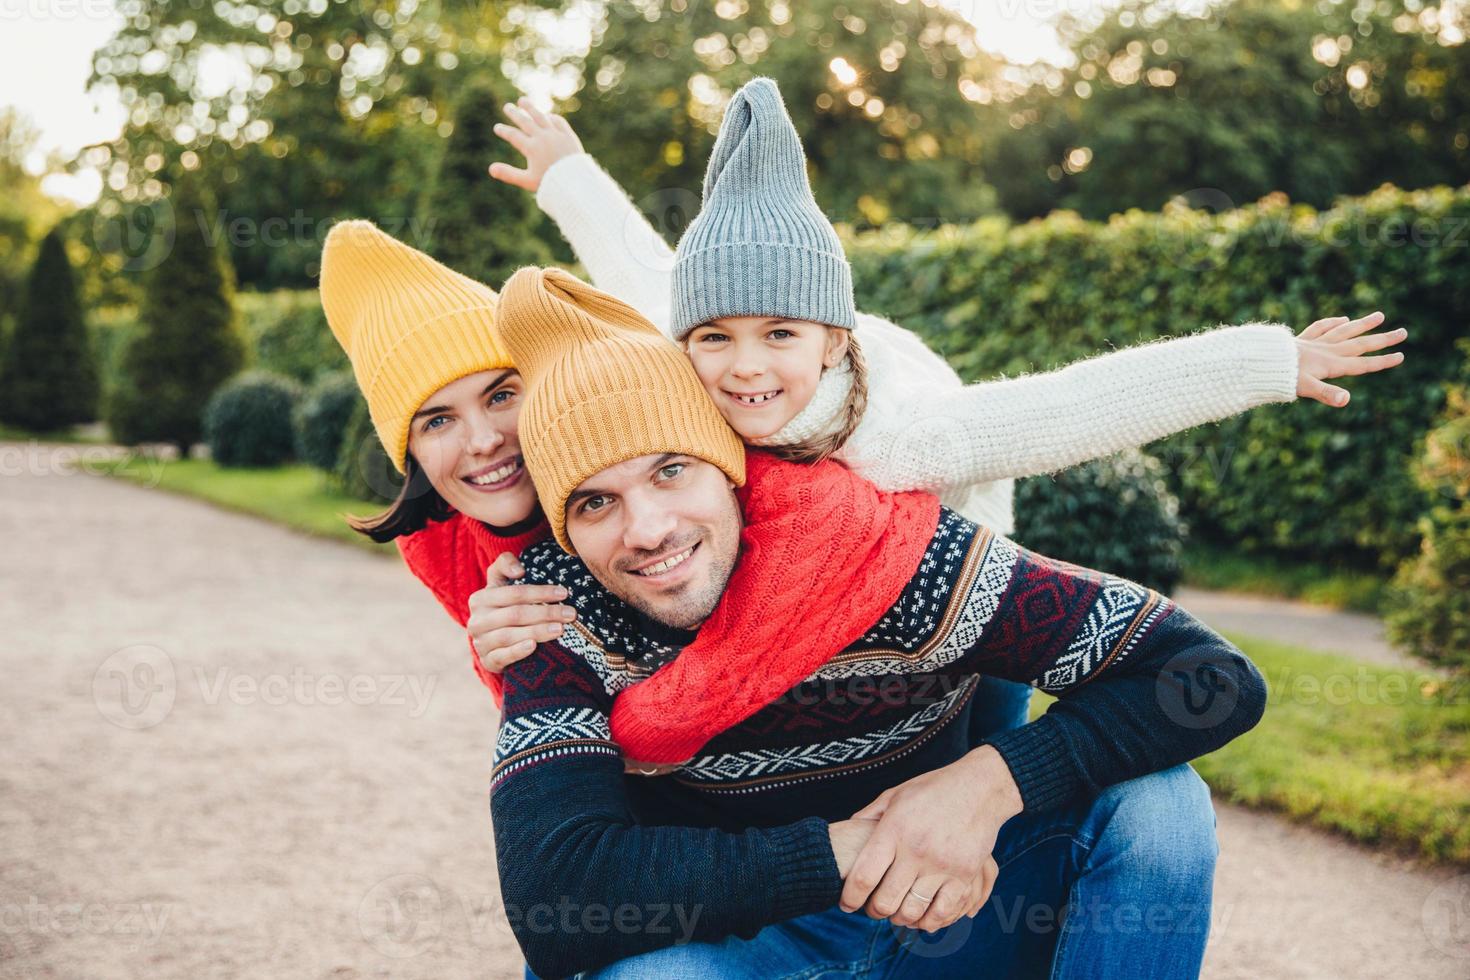 divertirsi insieme sorridente donna eccitata, uomo e la loro bambina, indossare abiti caldi a maglia, abbracciarsi, camminare nel parco, essere di buon umore. la famiglia dà sostegno, incoraggiamento foto